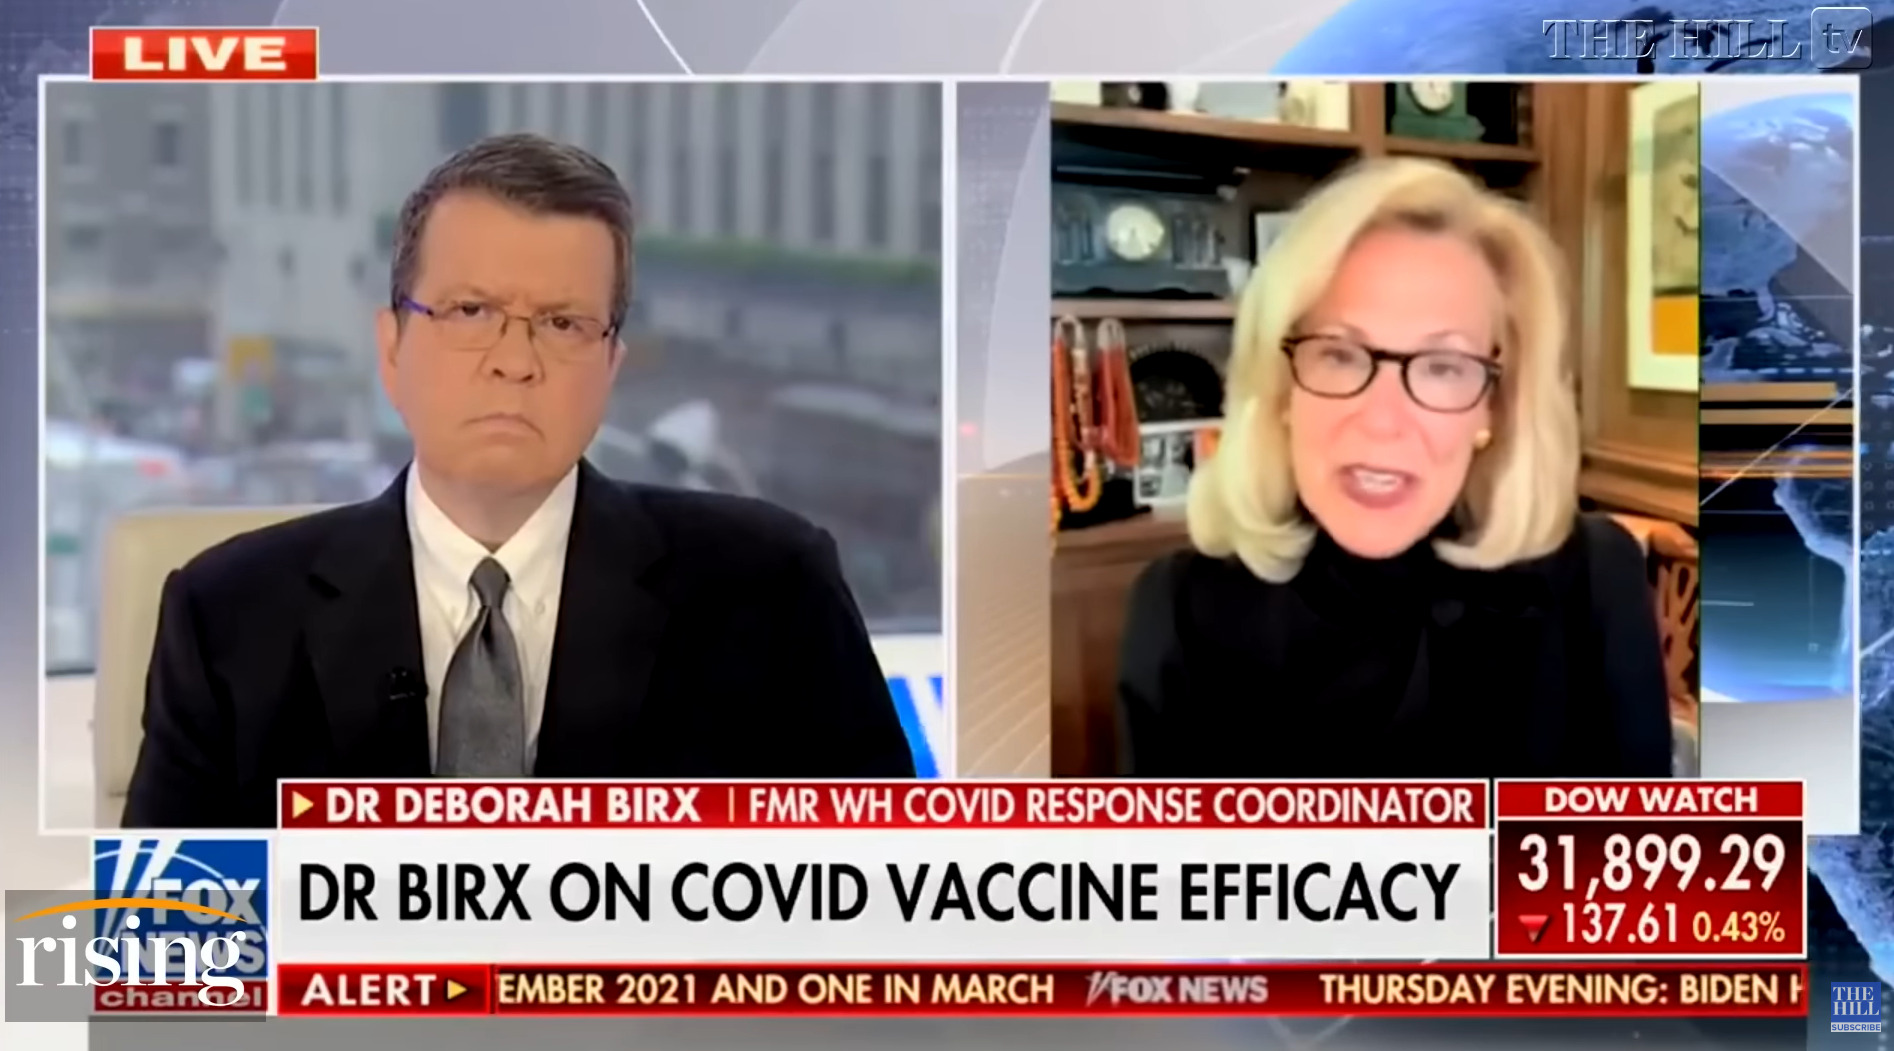 Deborah Birx: “penso che abbiamo esagerato con i vaccini”